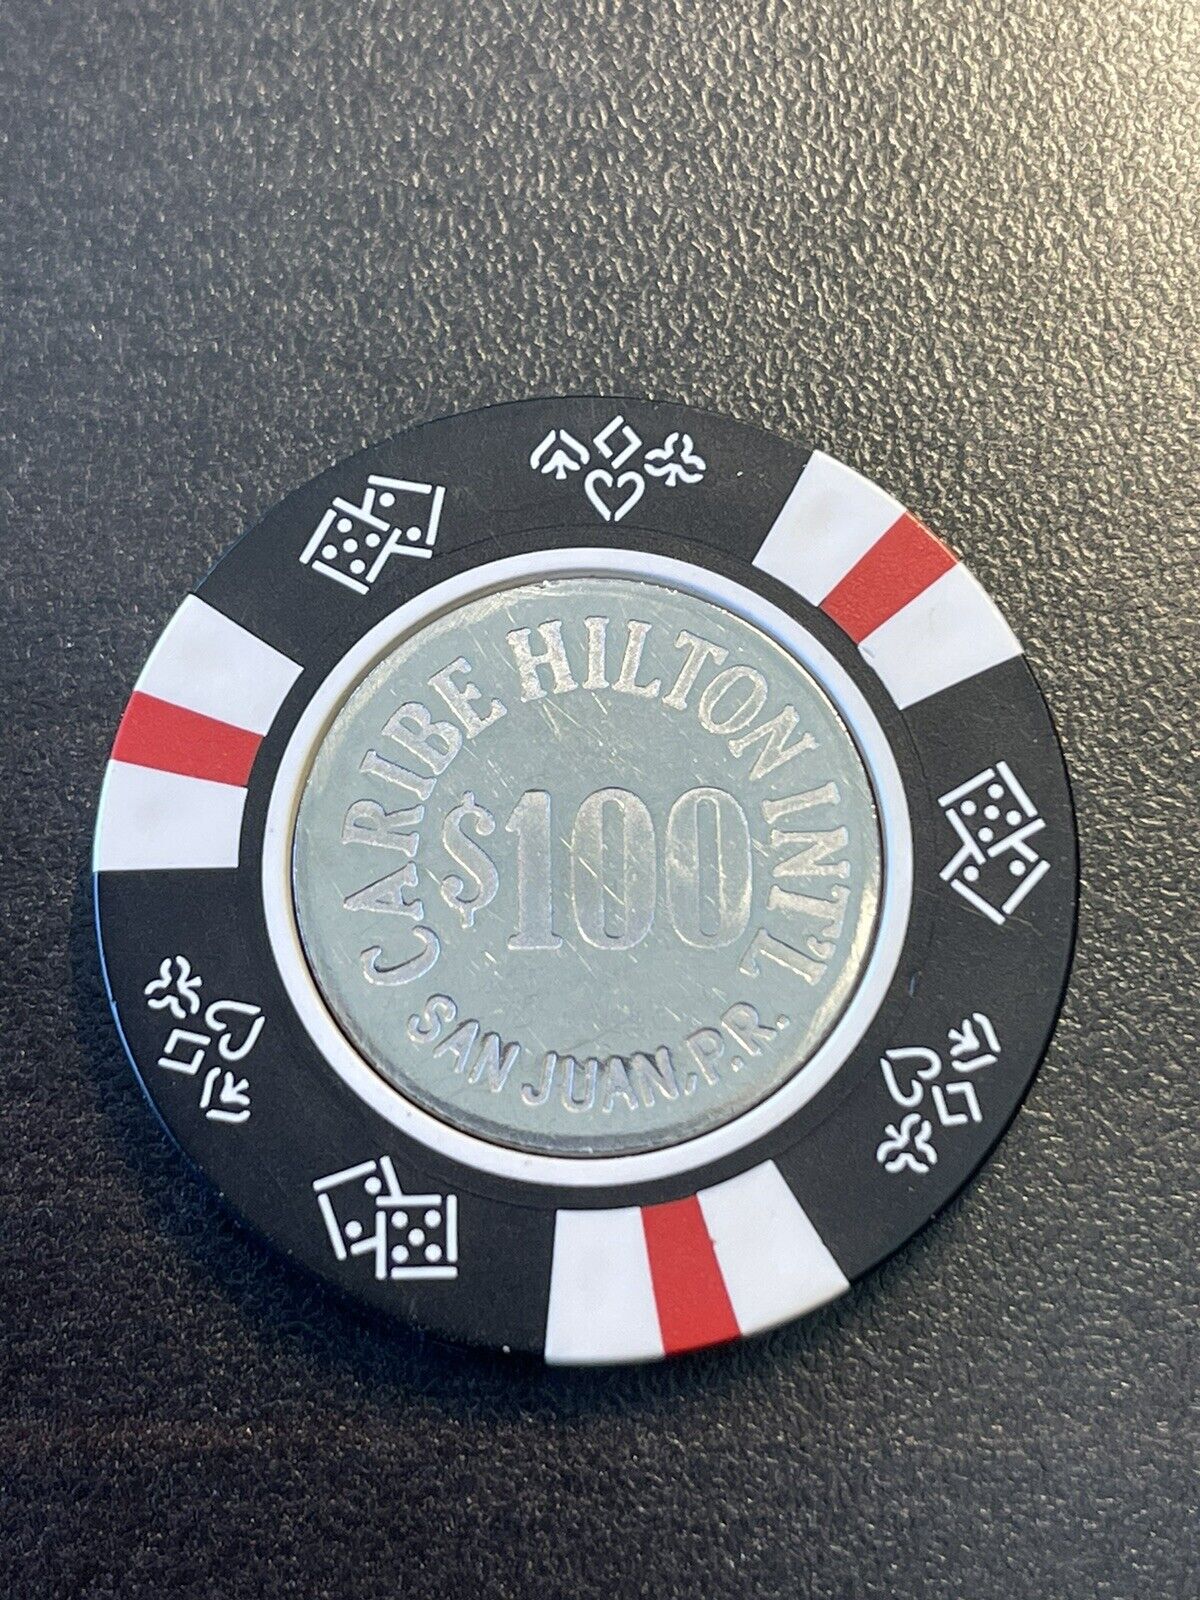 $100 Caribe Hilton San Juan Puerto Rico Casino Chip CHC-100E *Very Very Rare*